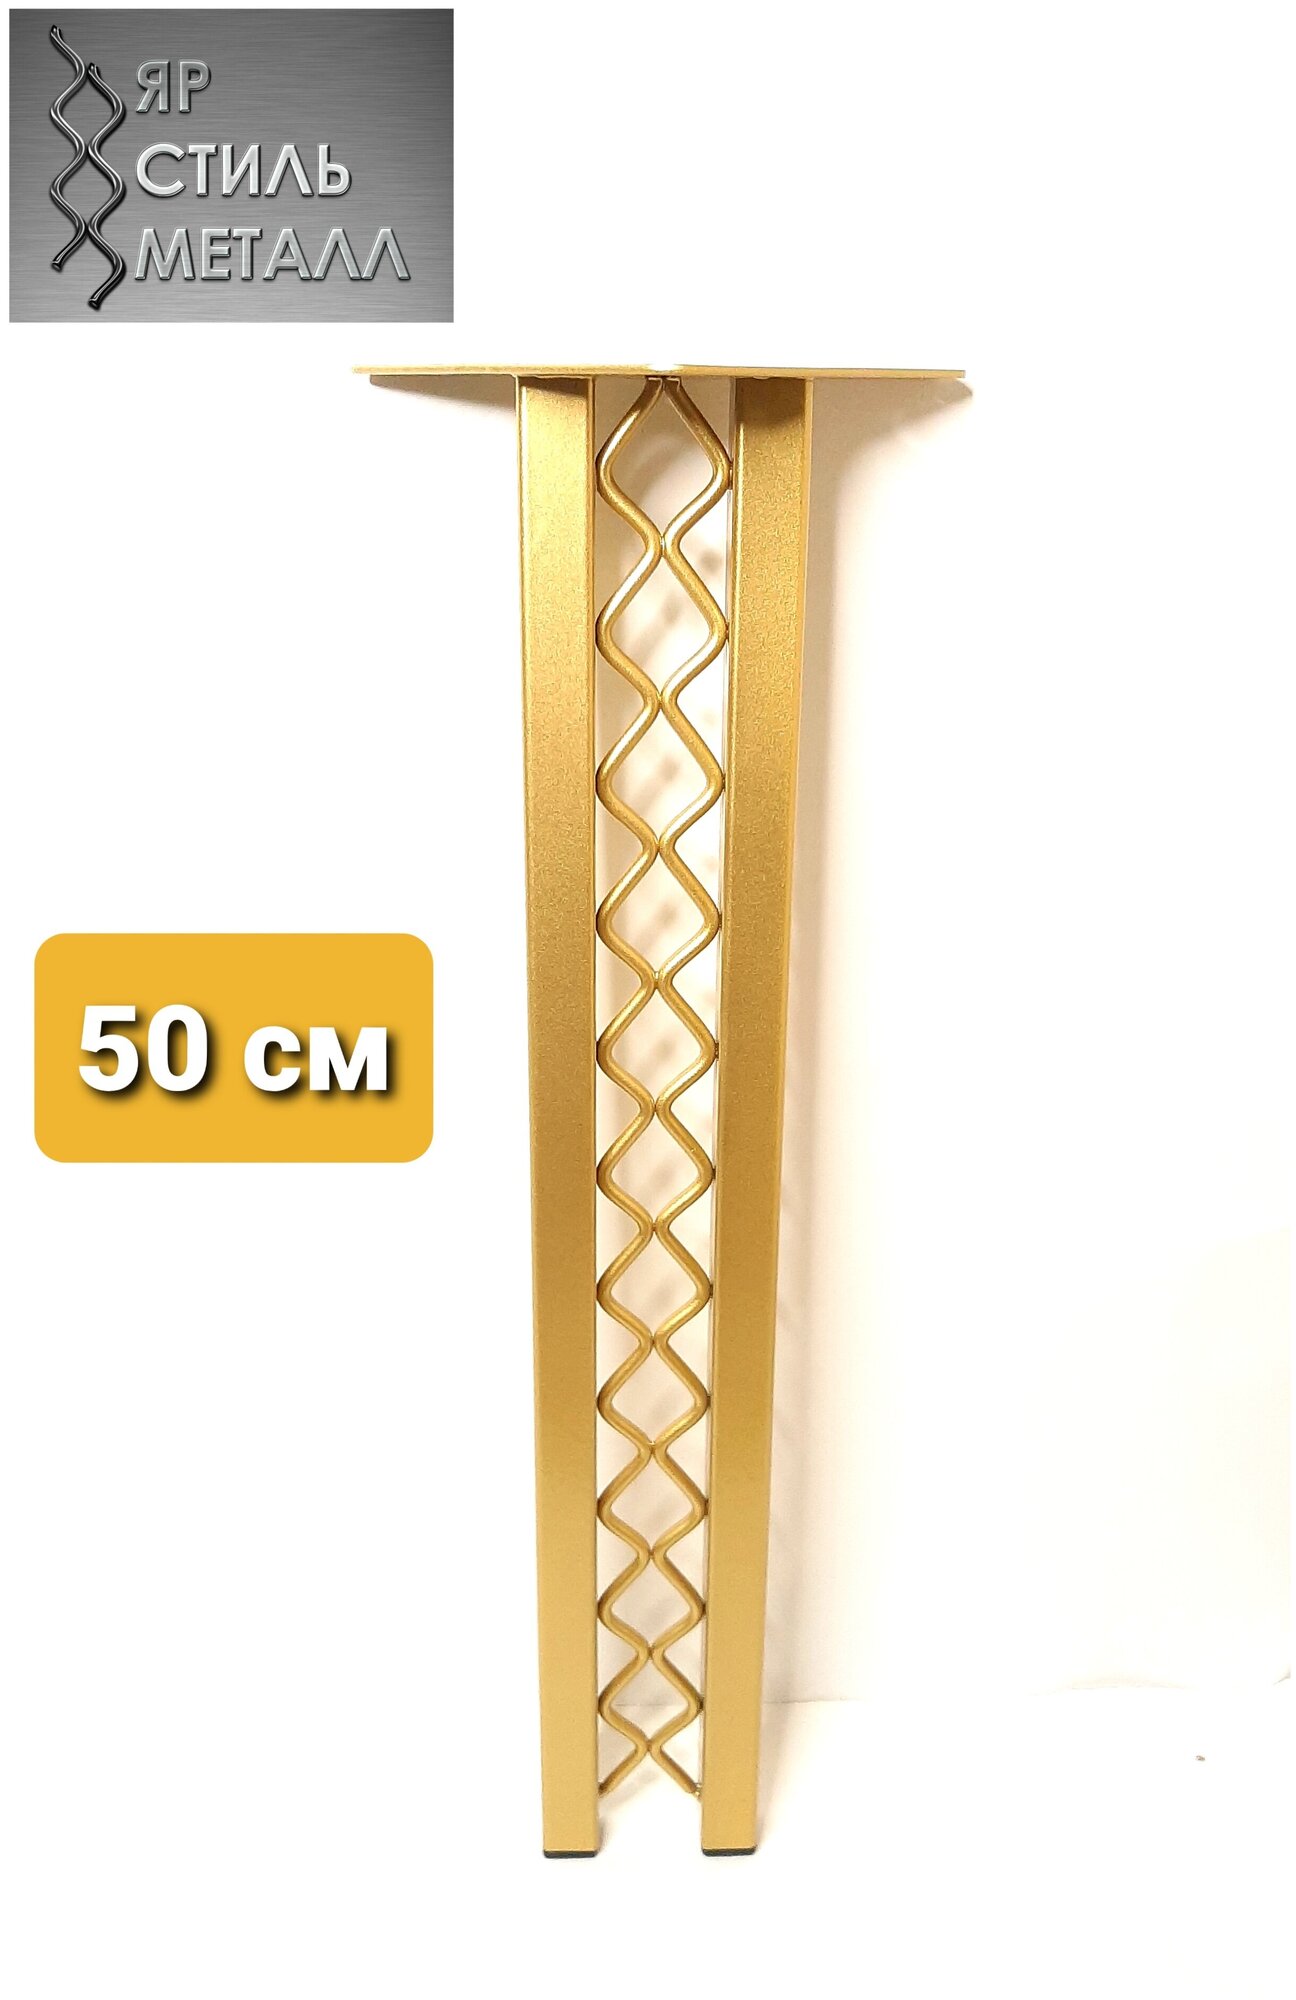 Ножка металлическая для стола Ажур2П. Высота 50 см. 1 шт. Матовое золото.